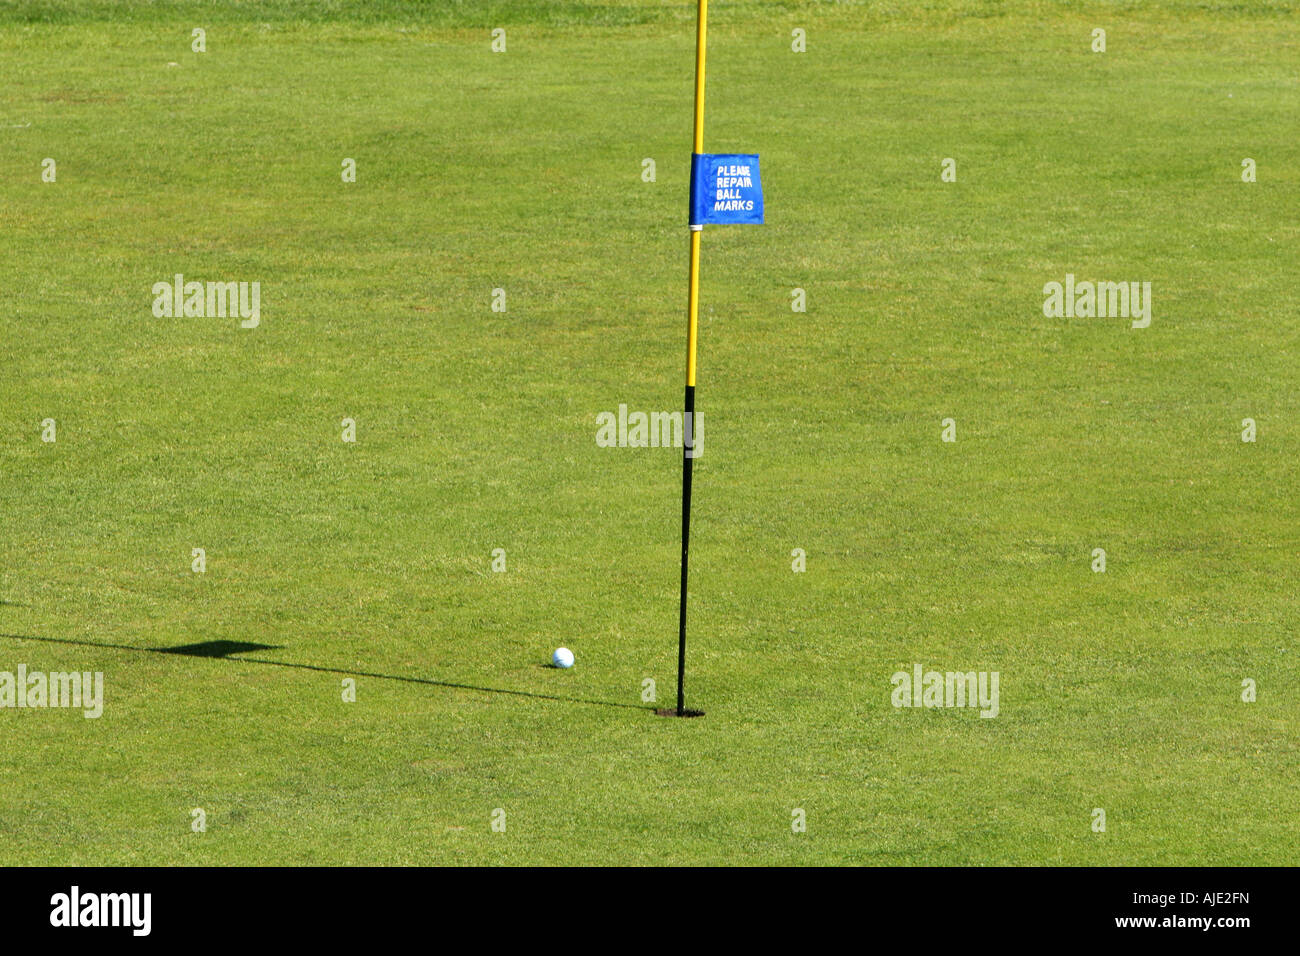 Golfball vicino al foro su un verde Foto Stock